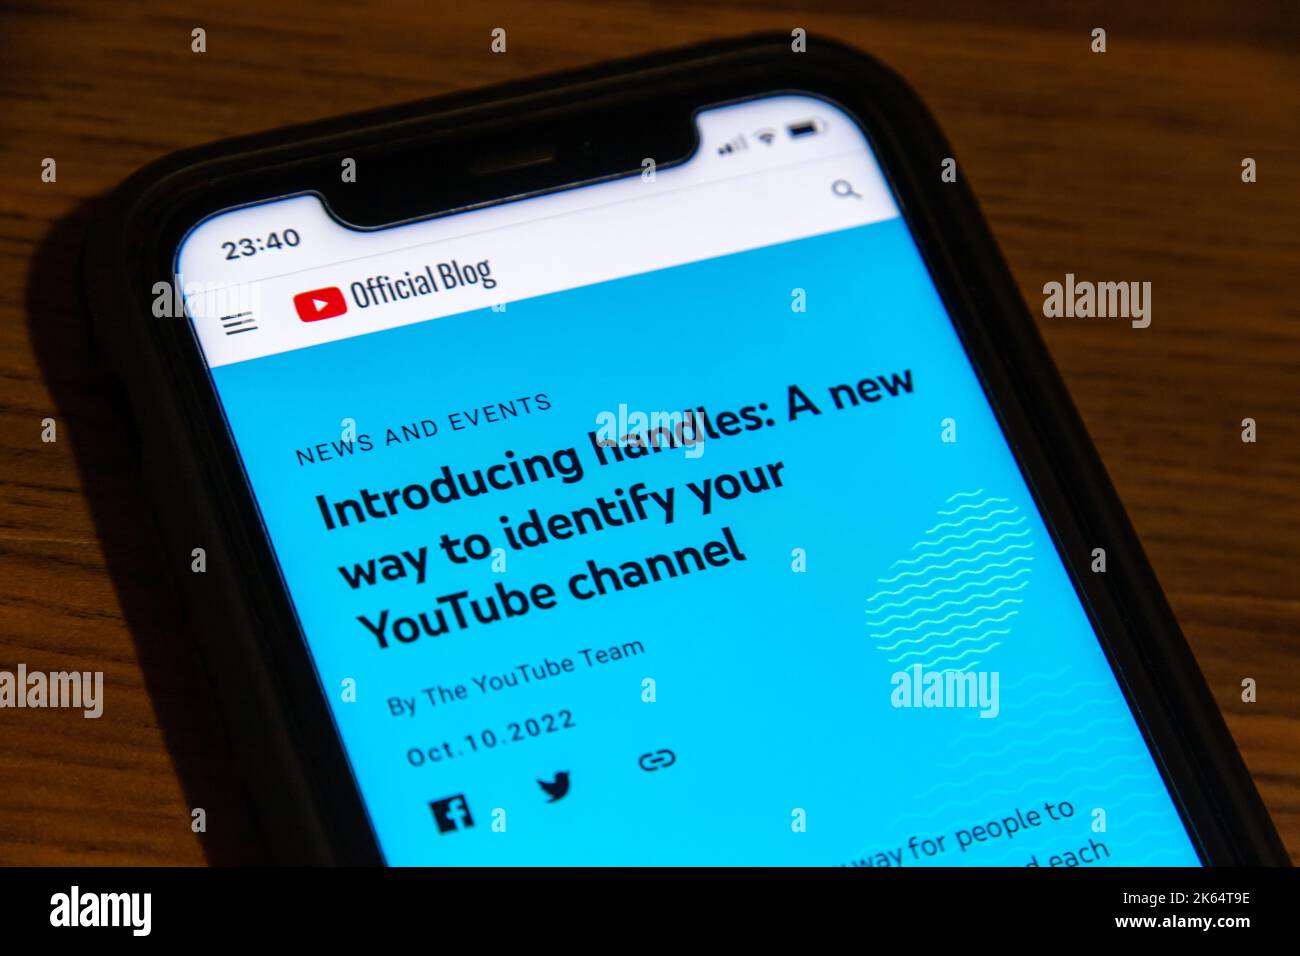 Ein Blogbeitrag über die Einführung von Handles auf YouTube von der YouTube-Blogseite auf dem iPhone. Handles sind eine neue eindeutige Kennung auf YouTube-Kanälen. Stockfoto